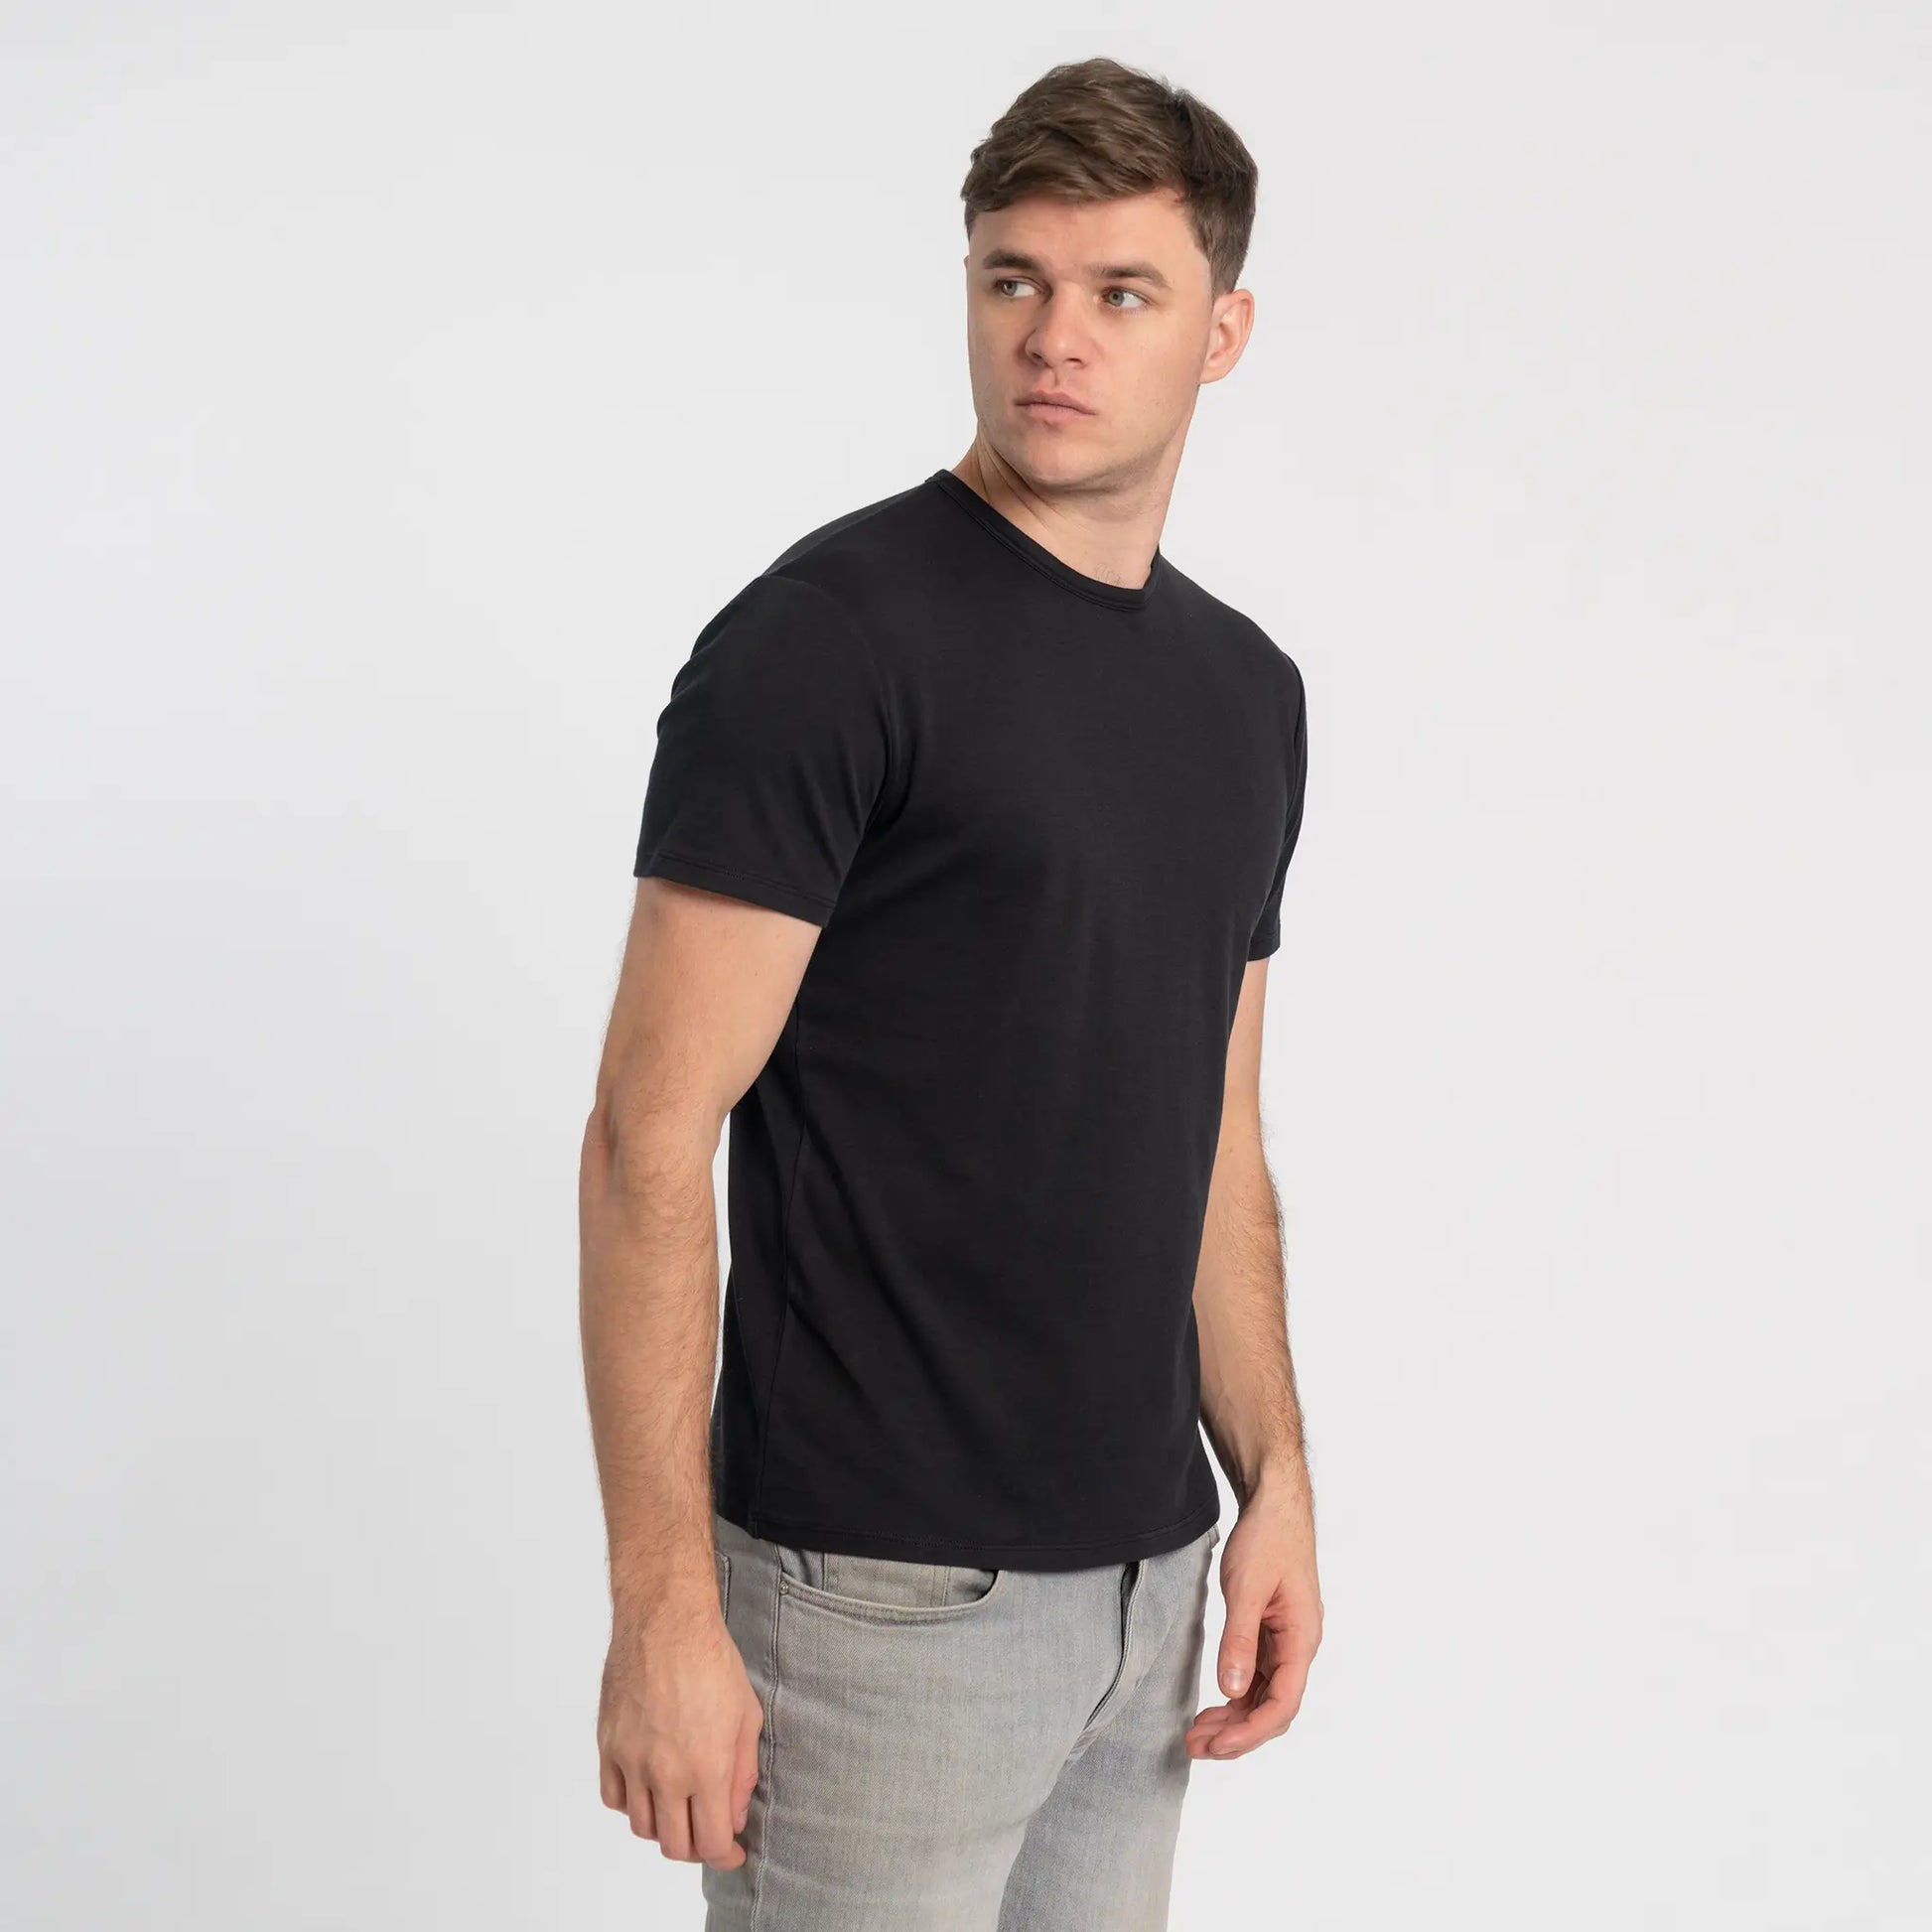 T-shirt homme noir en coton Pima premium bio - Pitumarka